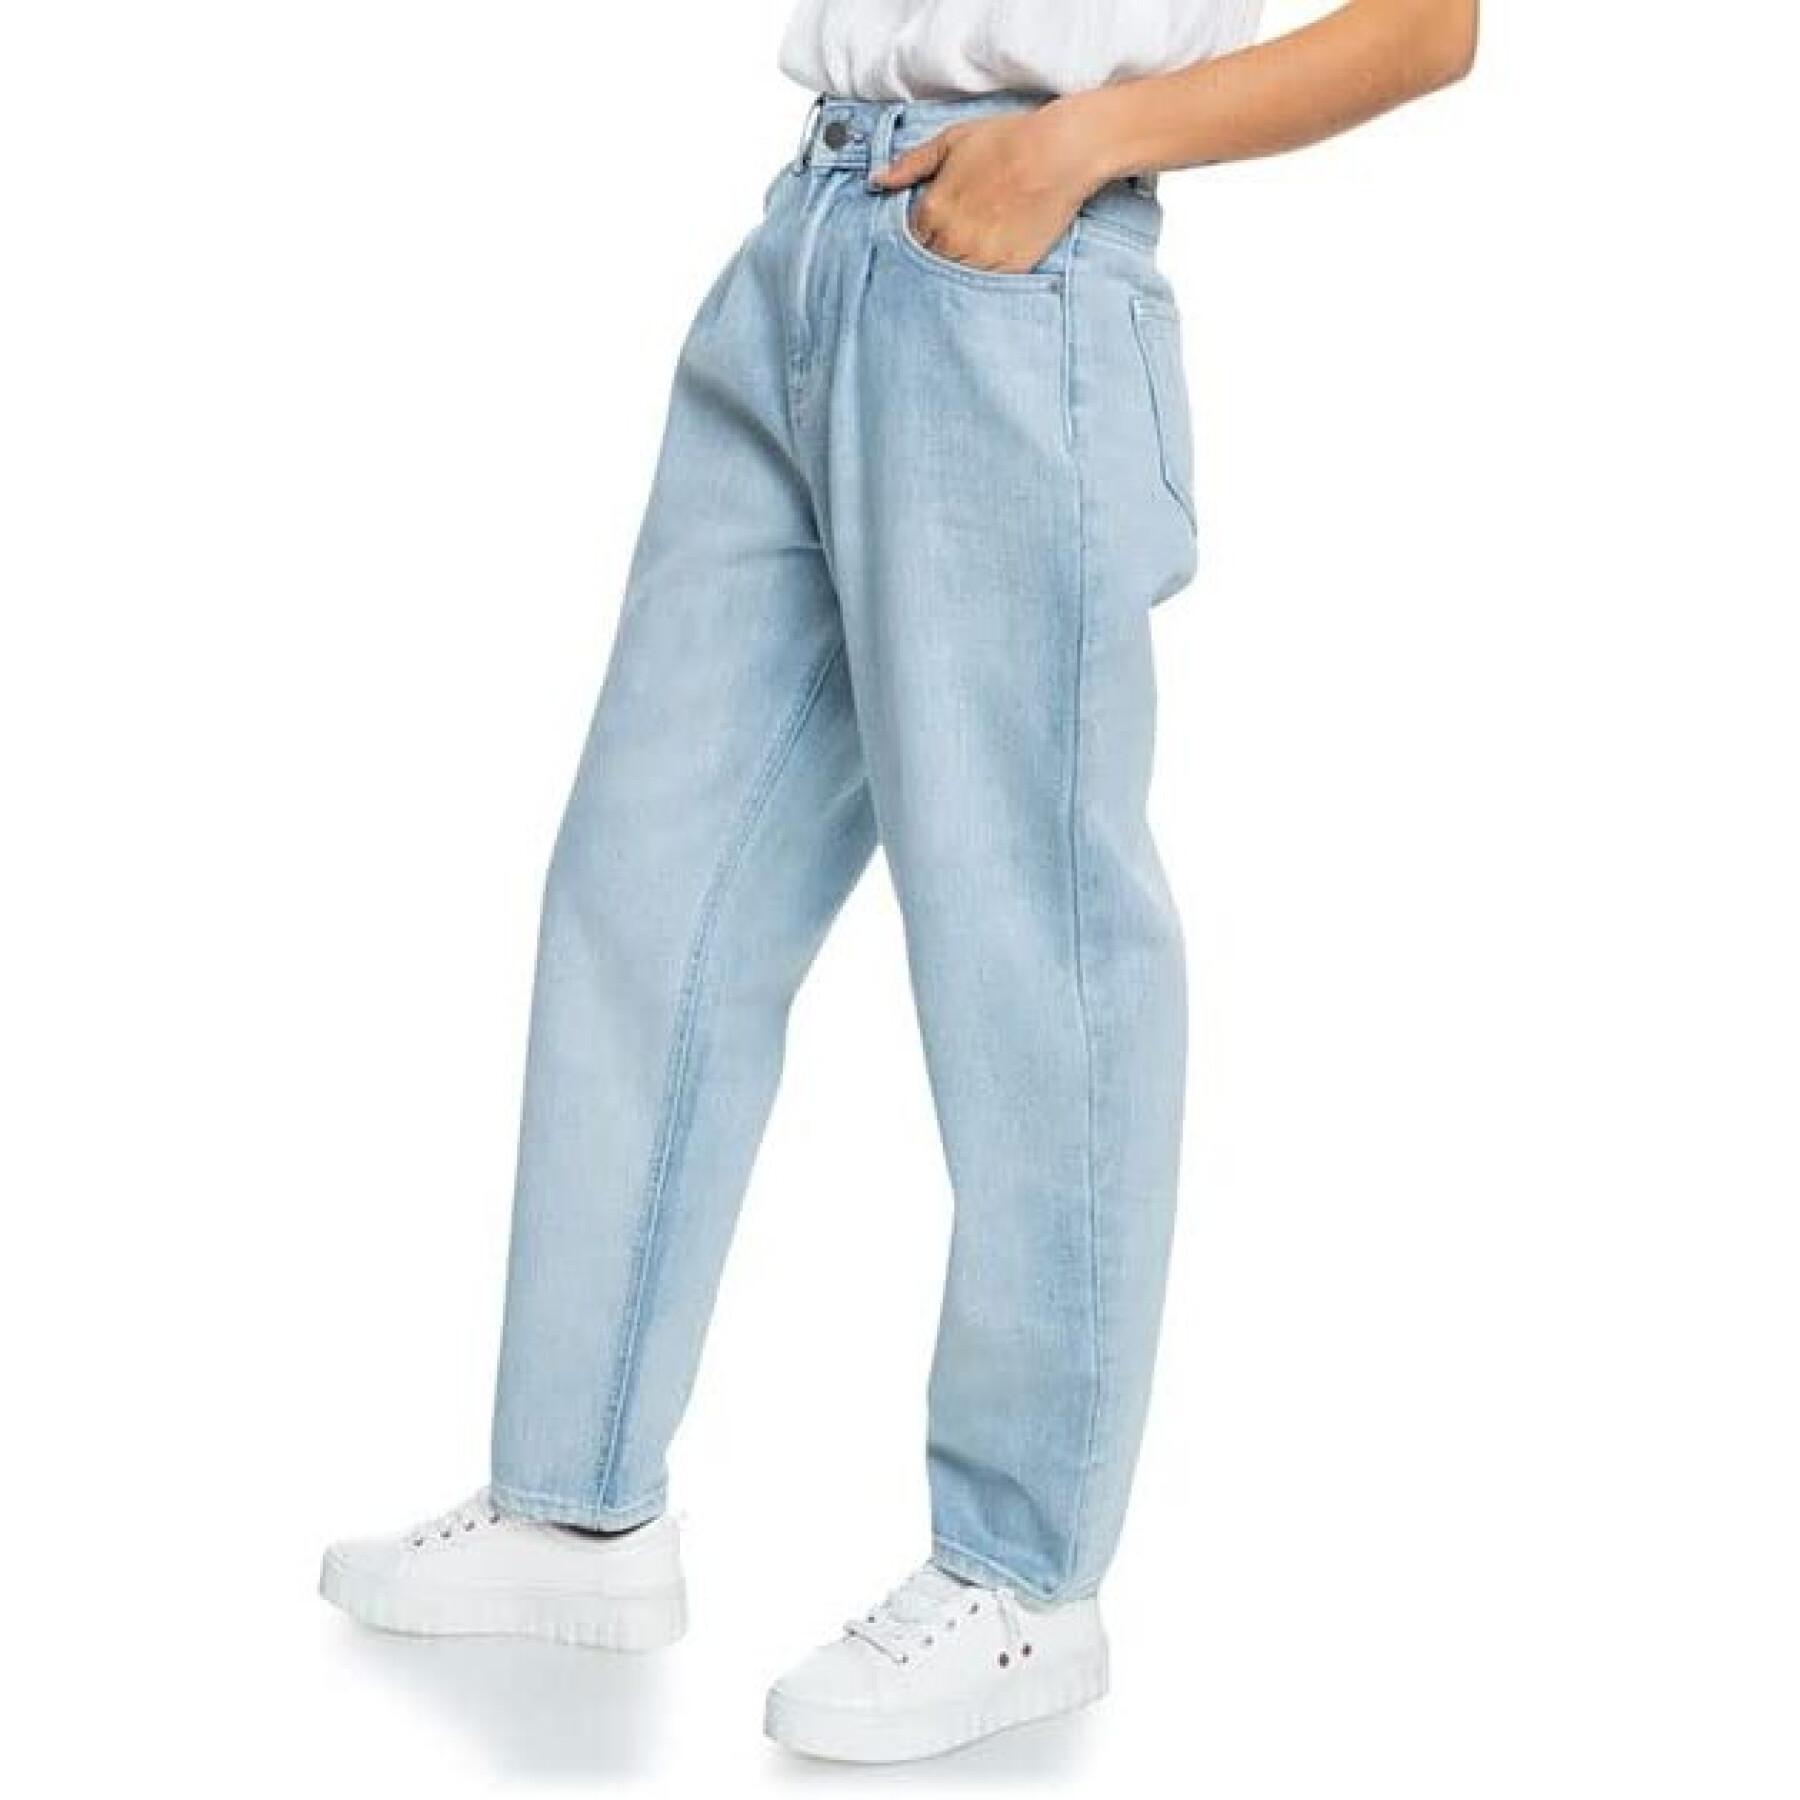 Women's jeans Roxy Opposite Way High